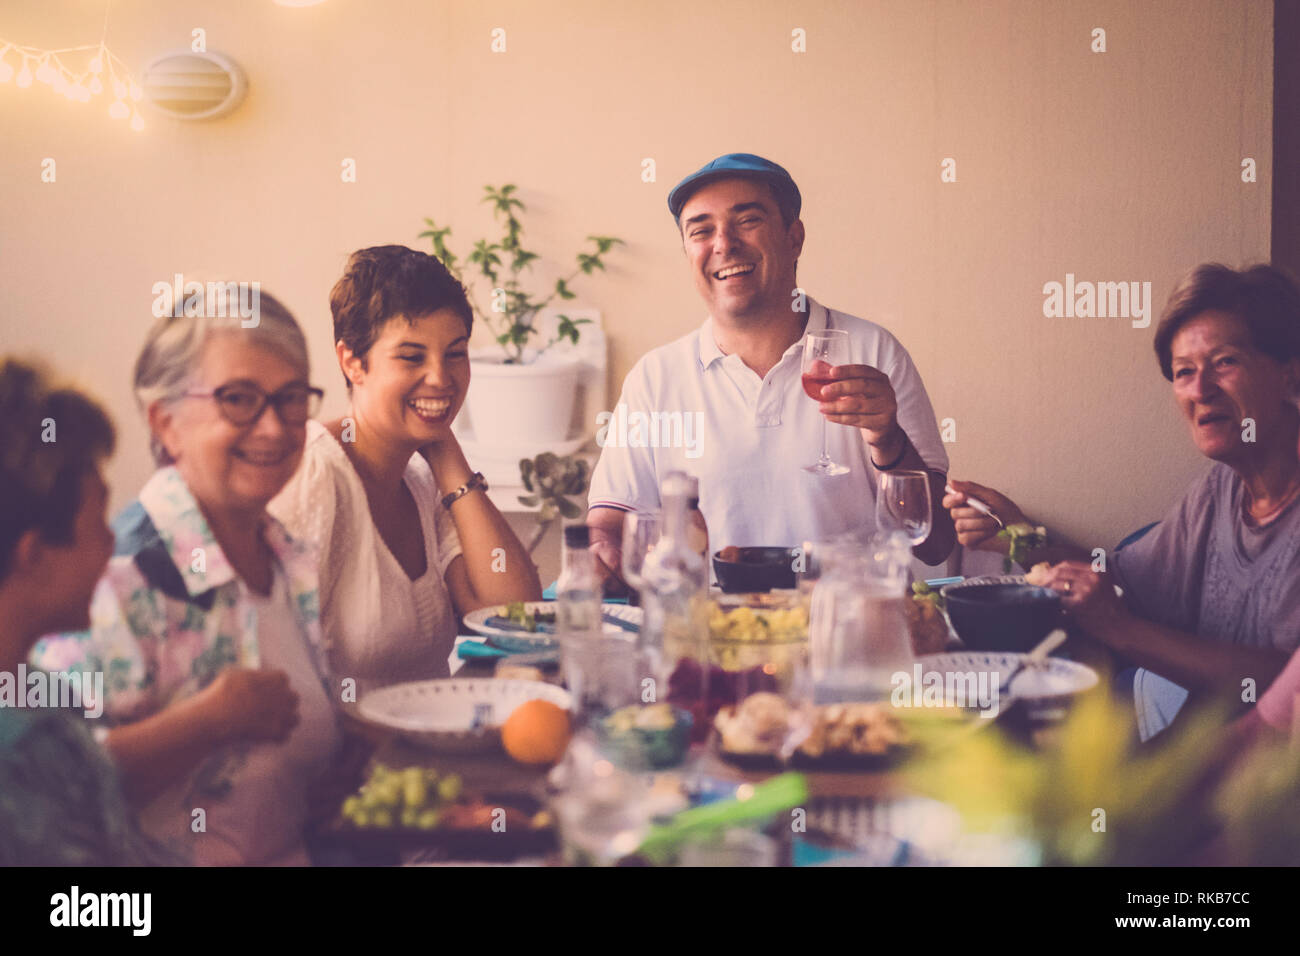 Abendessen mit langen Tisch voller gemischt Essen und Getränke - die Menschen in Freundschaft genießen die Zeit mit Lächeln und Lachen - Fokus auf letzte Mann Lachen Stockfoto